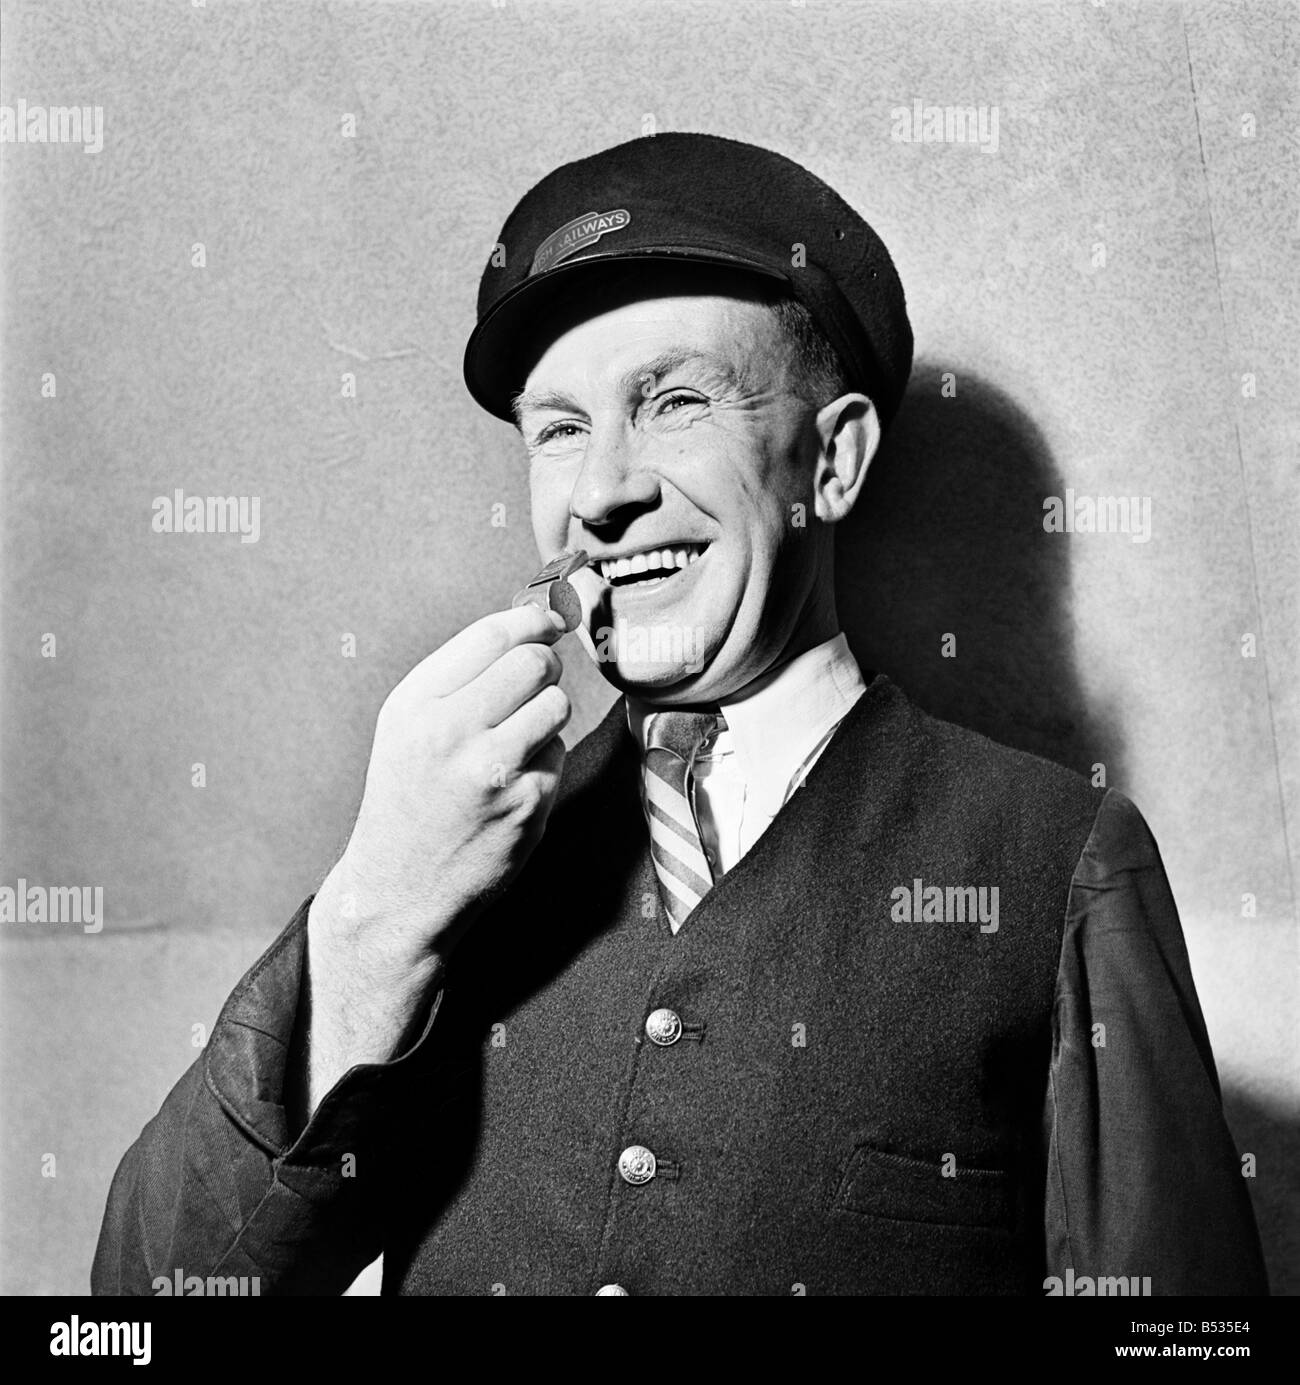 Vous pouvez siffler.&# 13 ;&# 10;Bob Smith-Referee vu ici dans son emploi de jour comme un garde de Fer. Octobre 1952 C5210 Banque D'Images